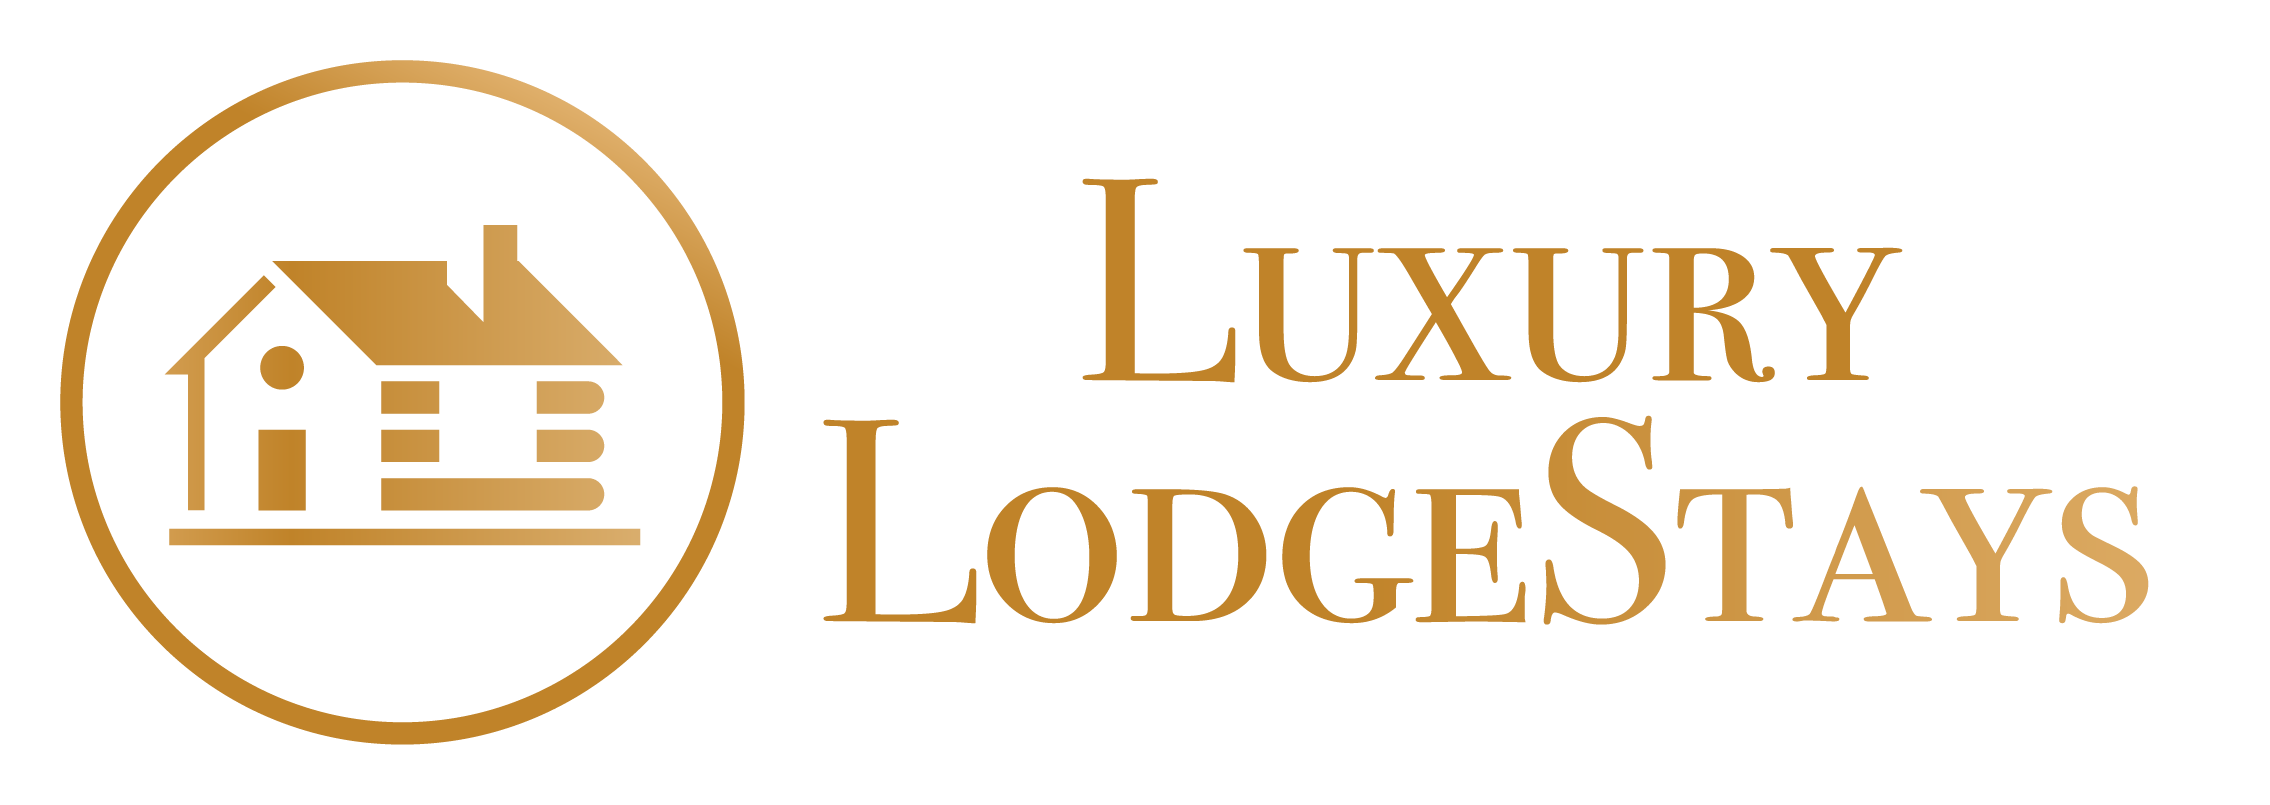 Luxury Lodge Stays